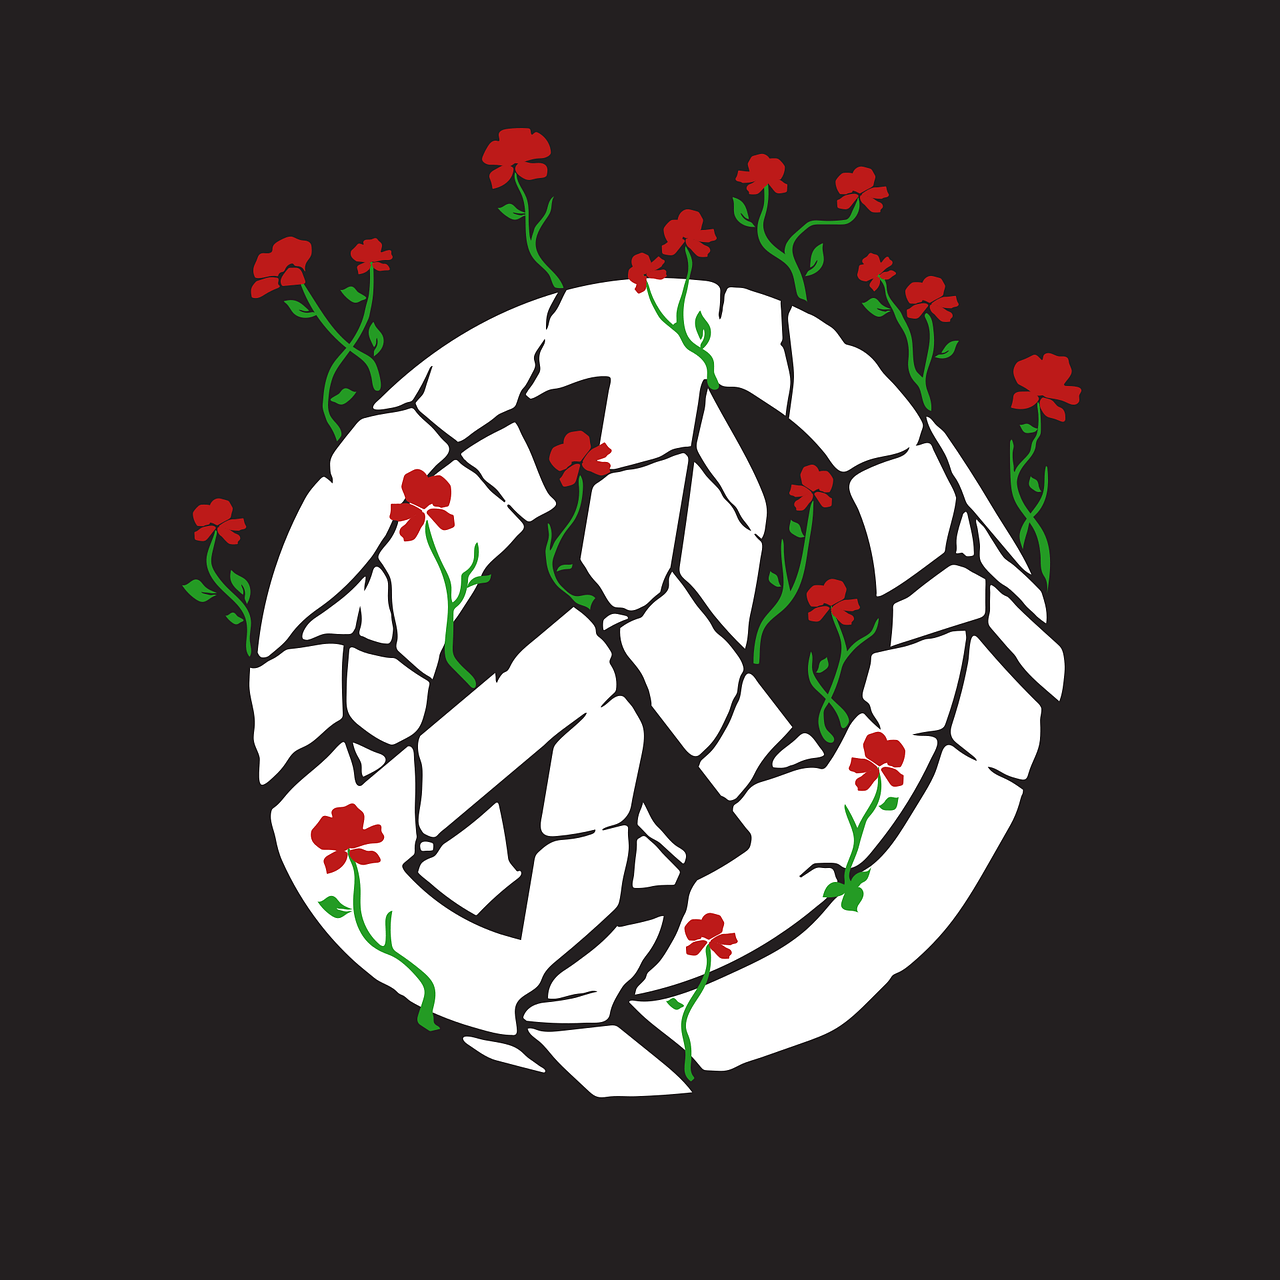 רקע של סמל השלום